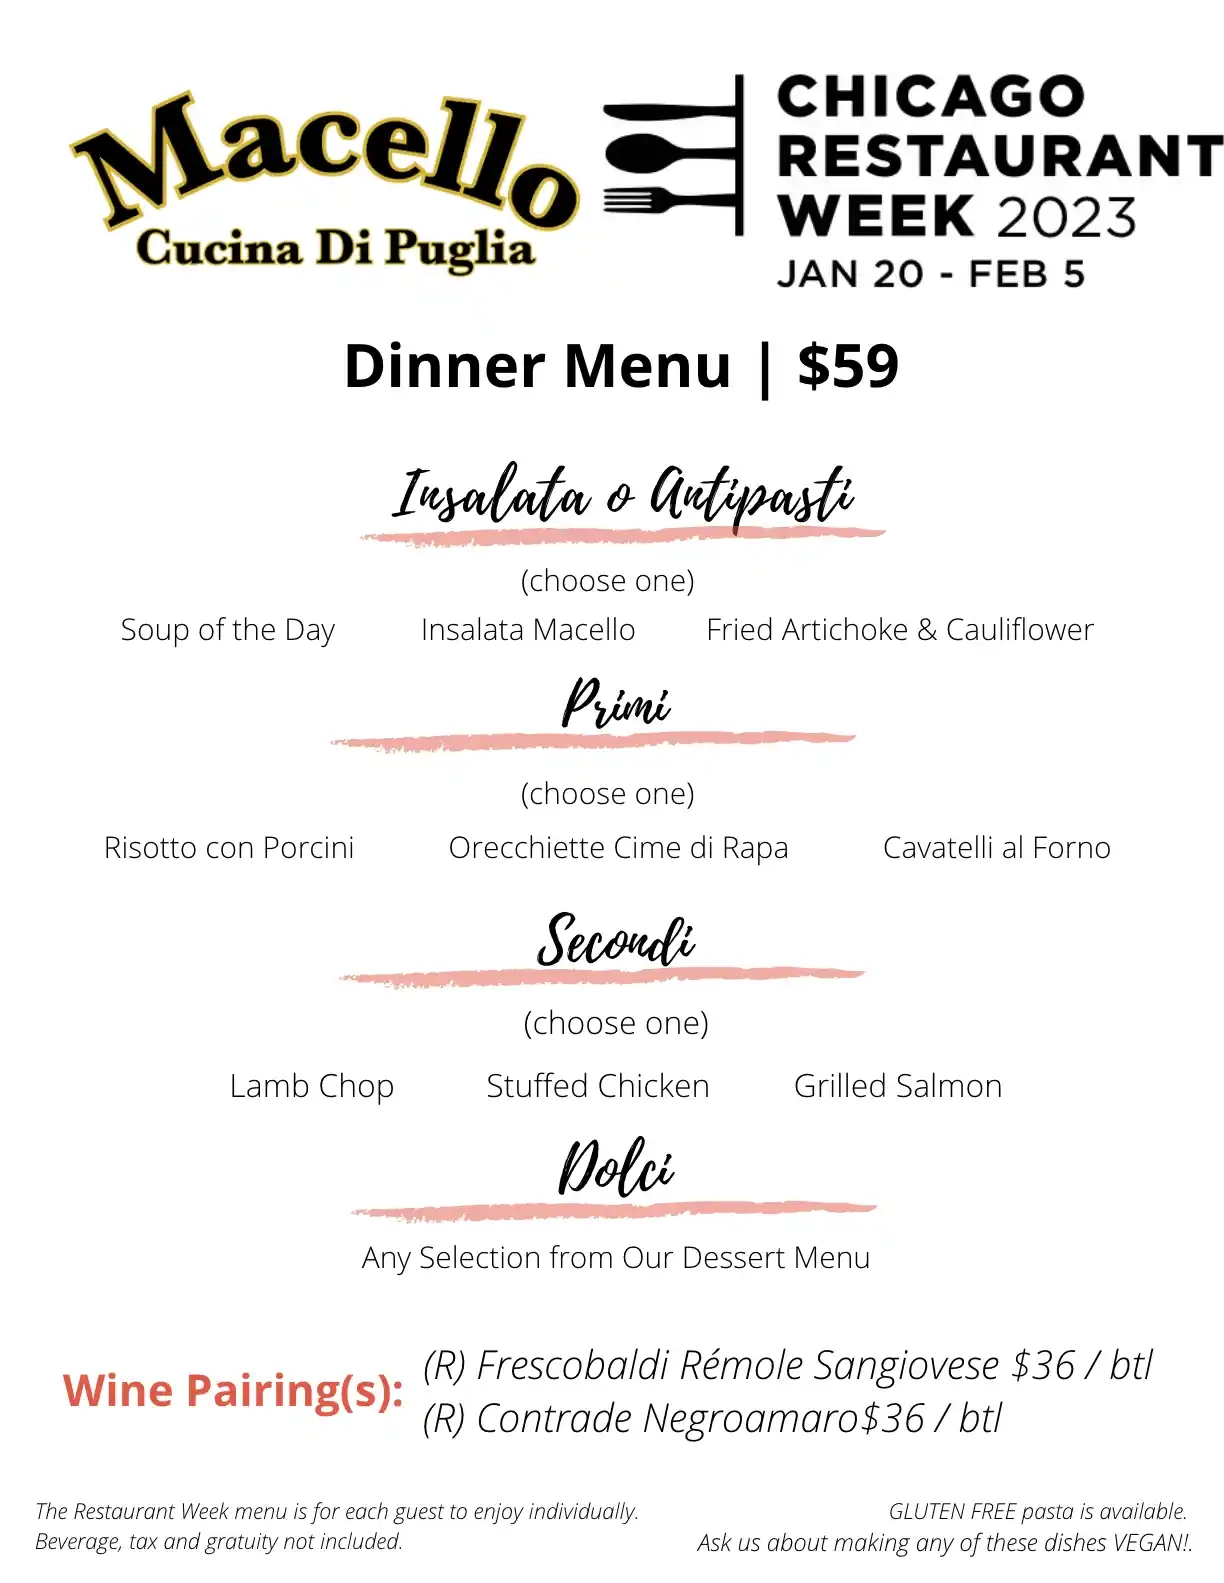 Chicago Restaurant Week 2023 Menu Macello Cucina Di Puglia